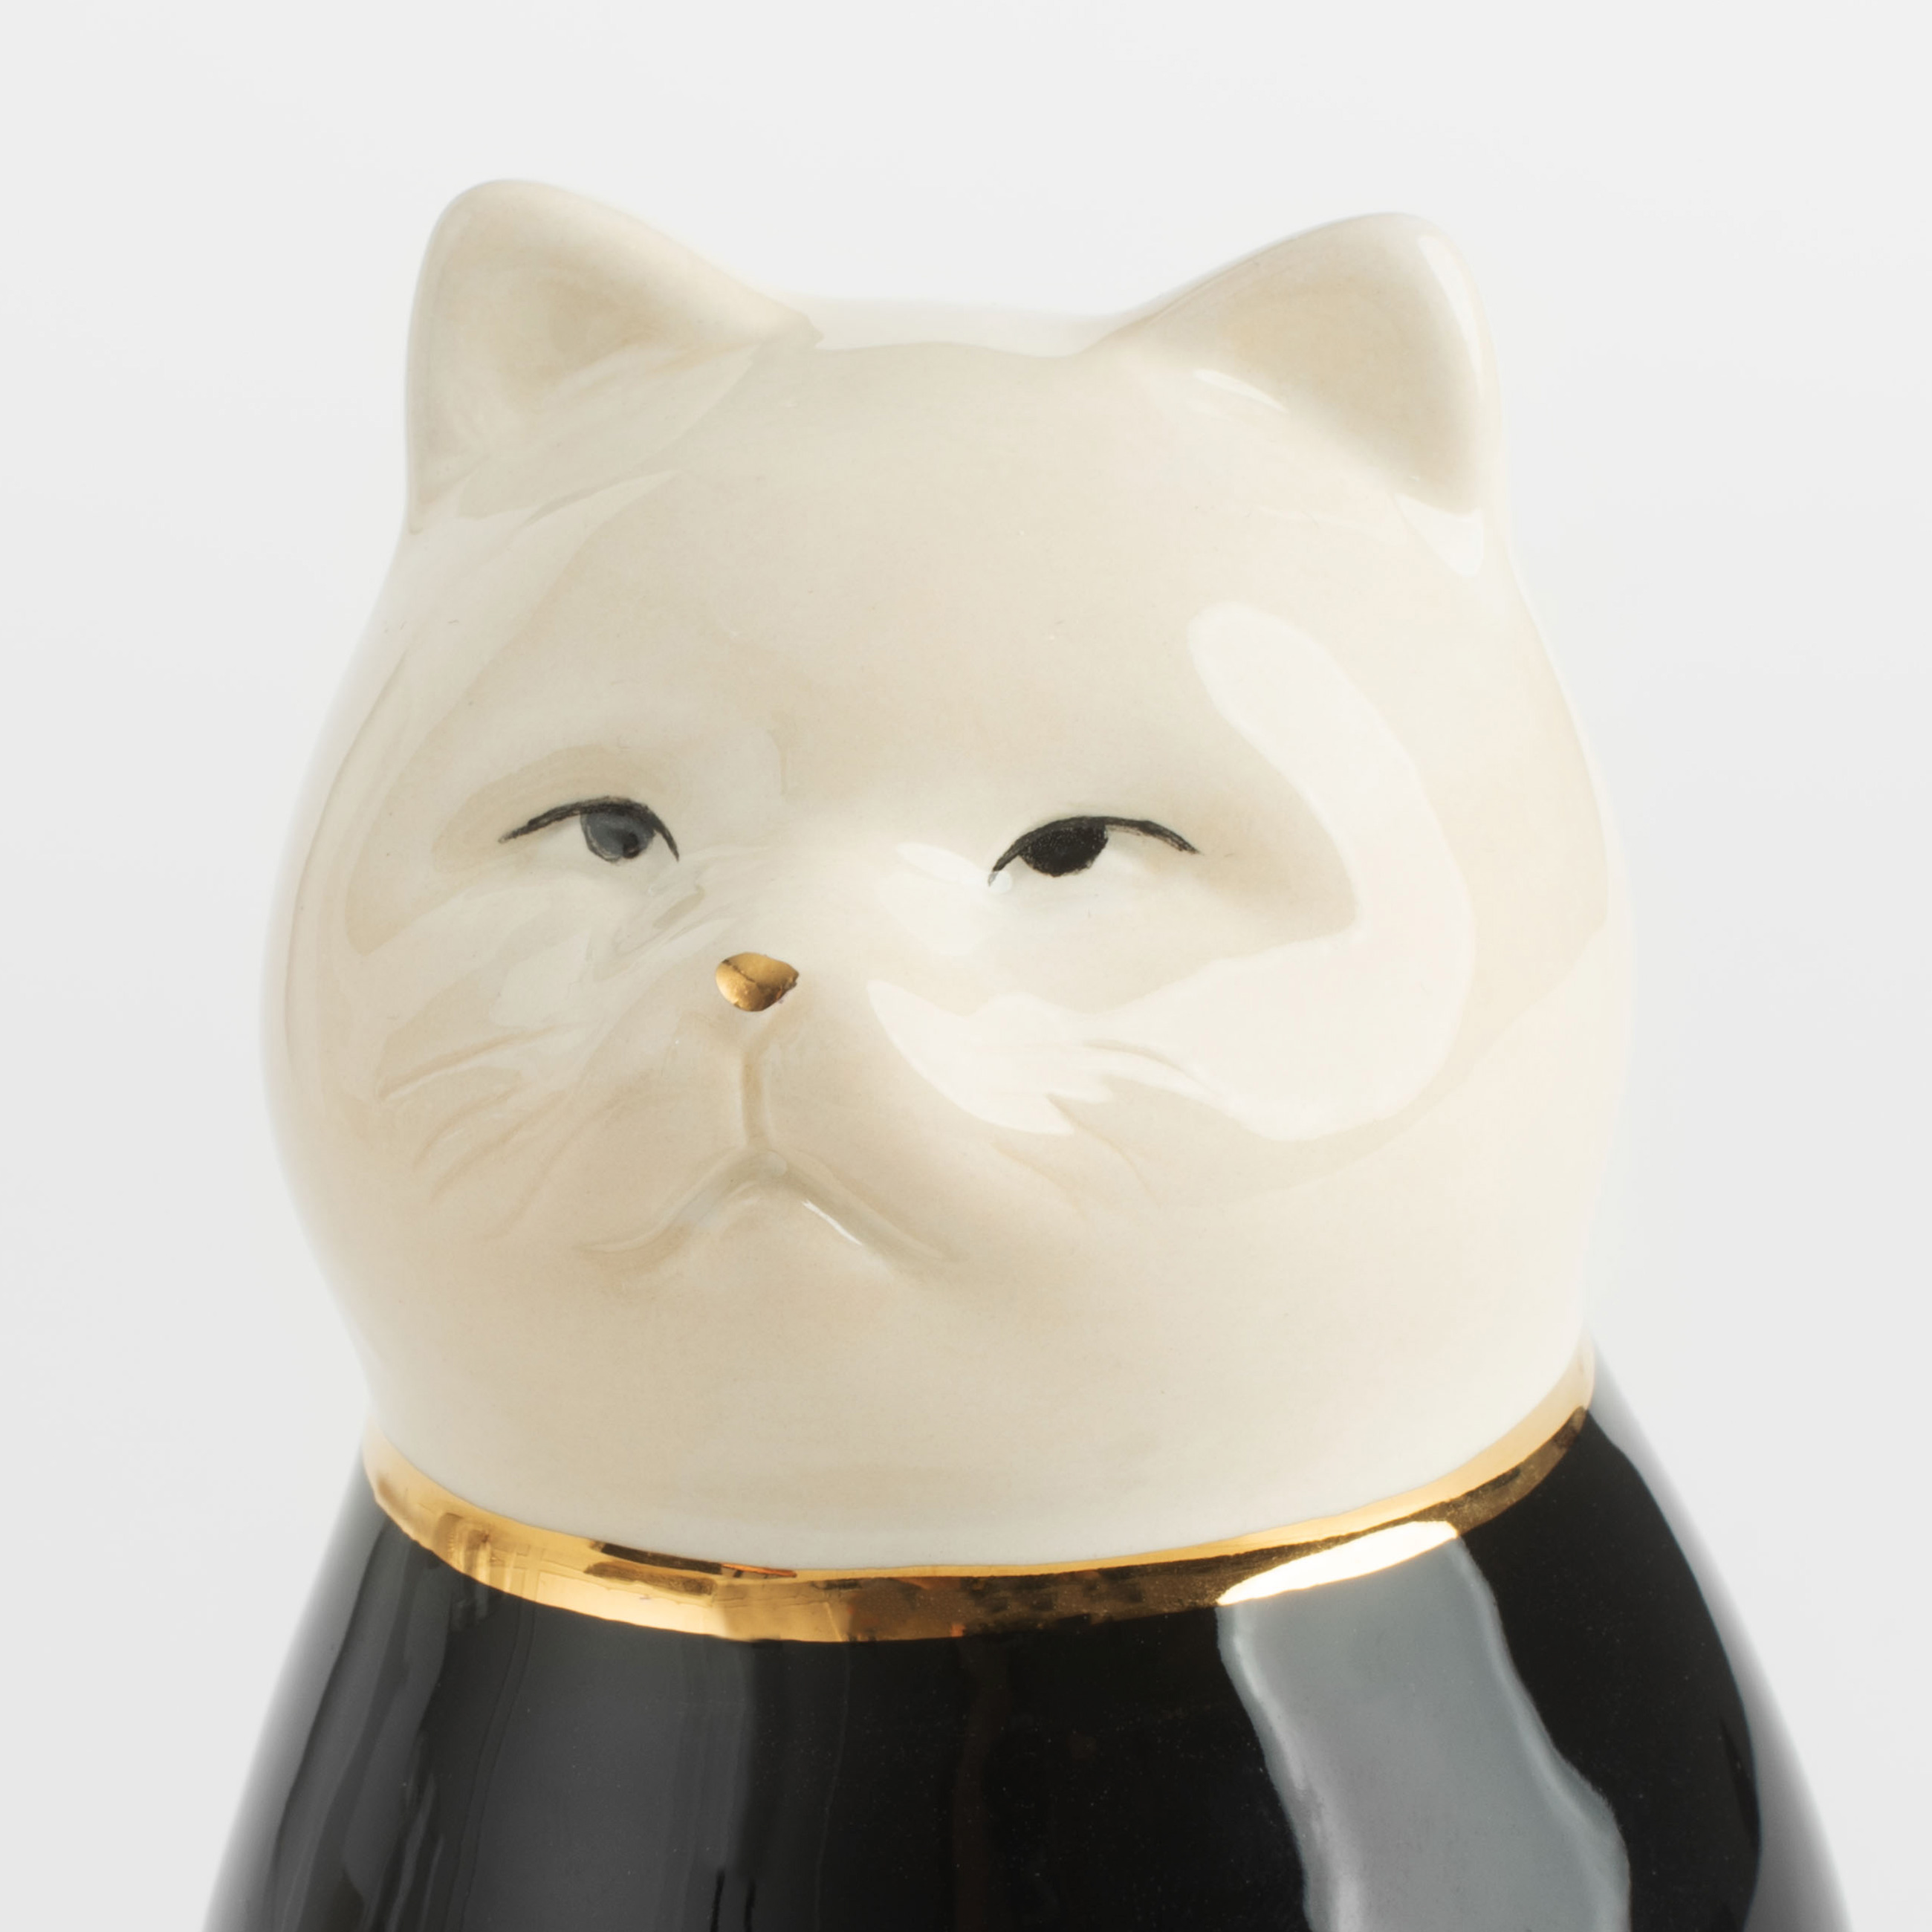 Figurine, 11 cm, ceramic, black and white, Cat, B&amp;W изображение № 2